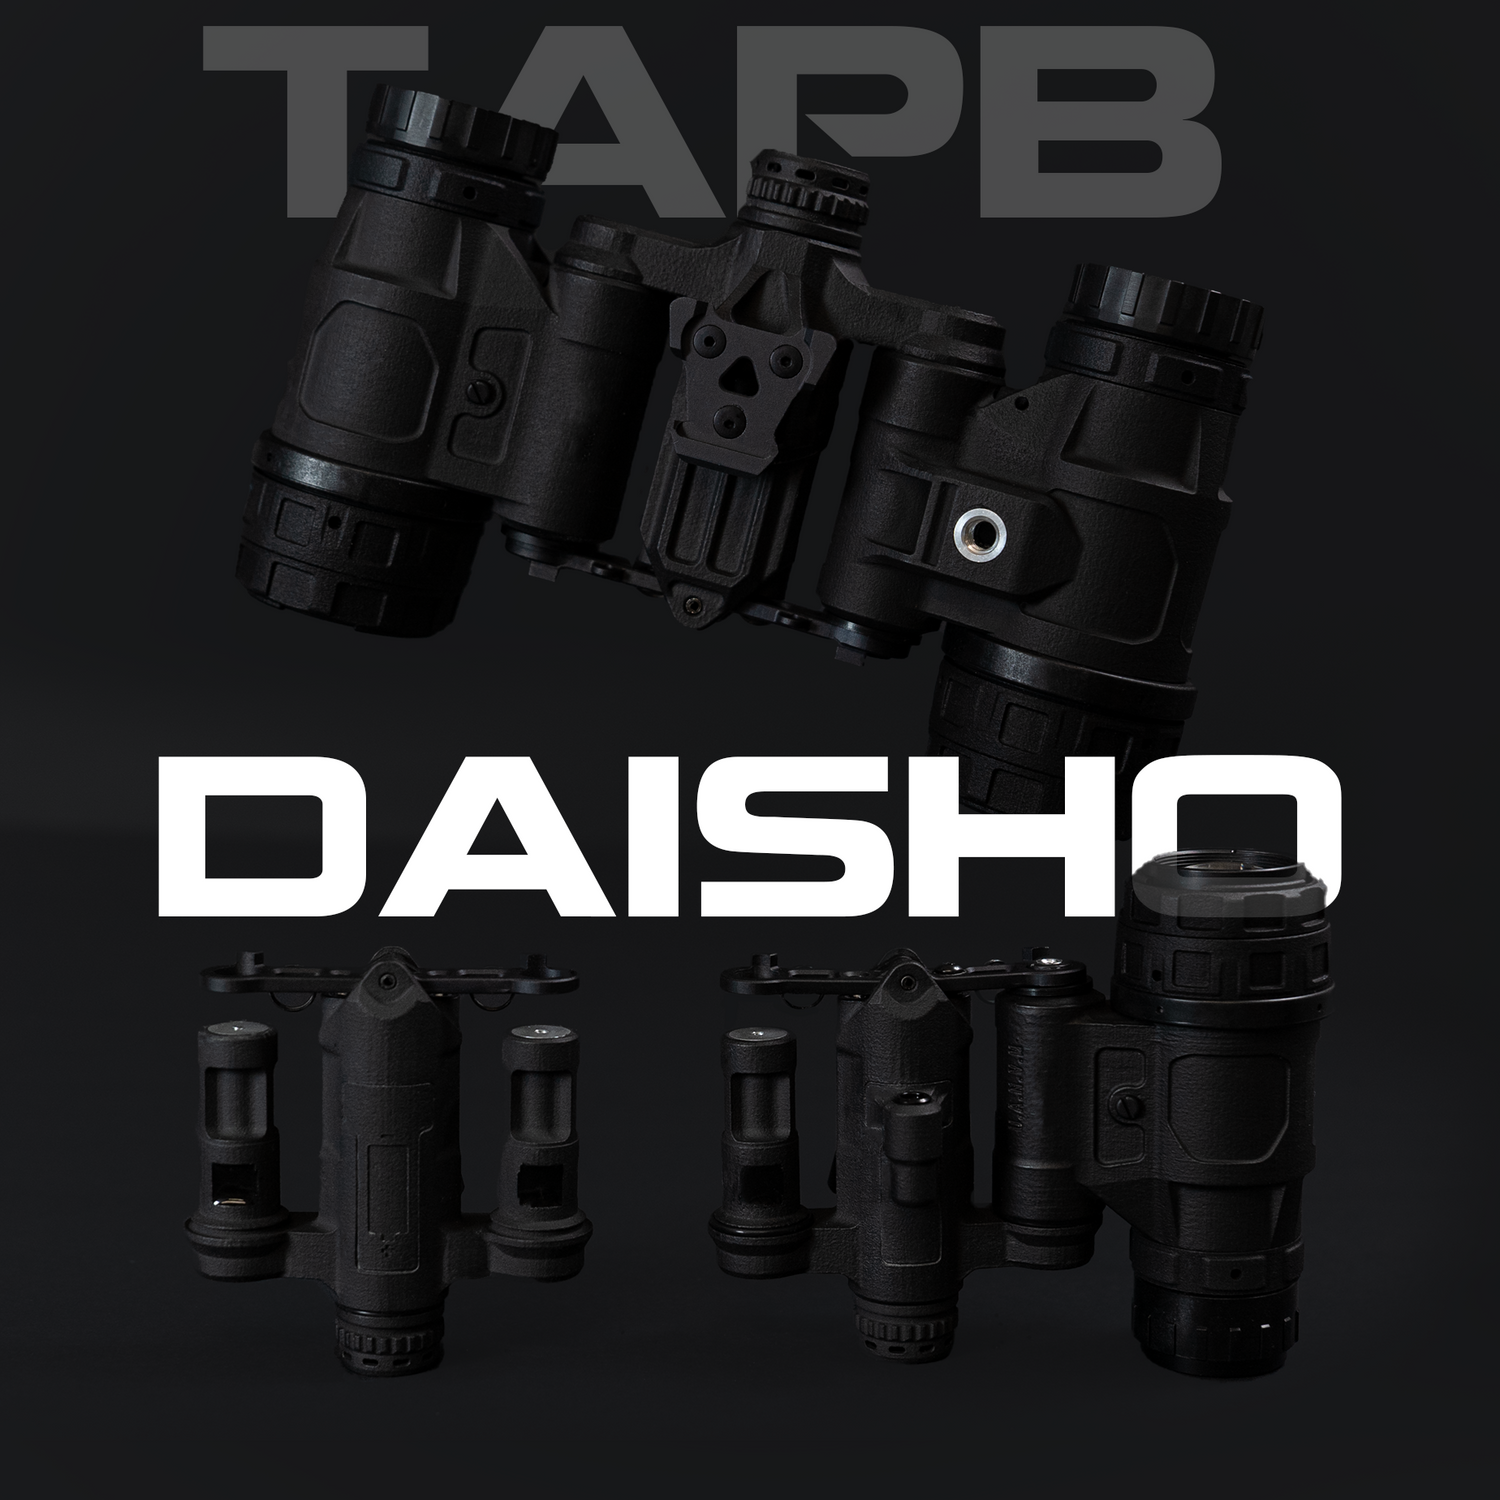 TAPB (Tanto Articulating Powered Bridge) “Daisho”